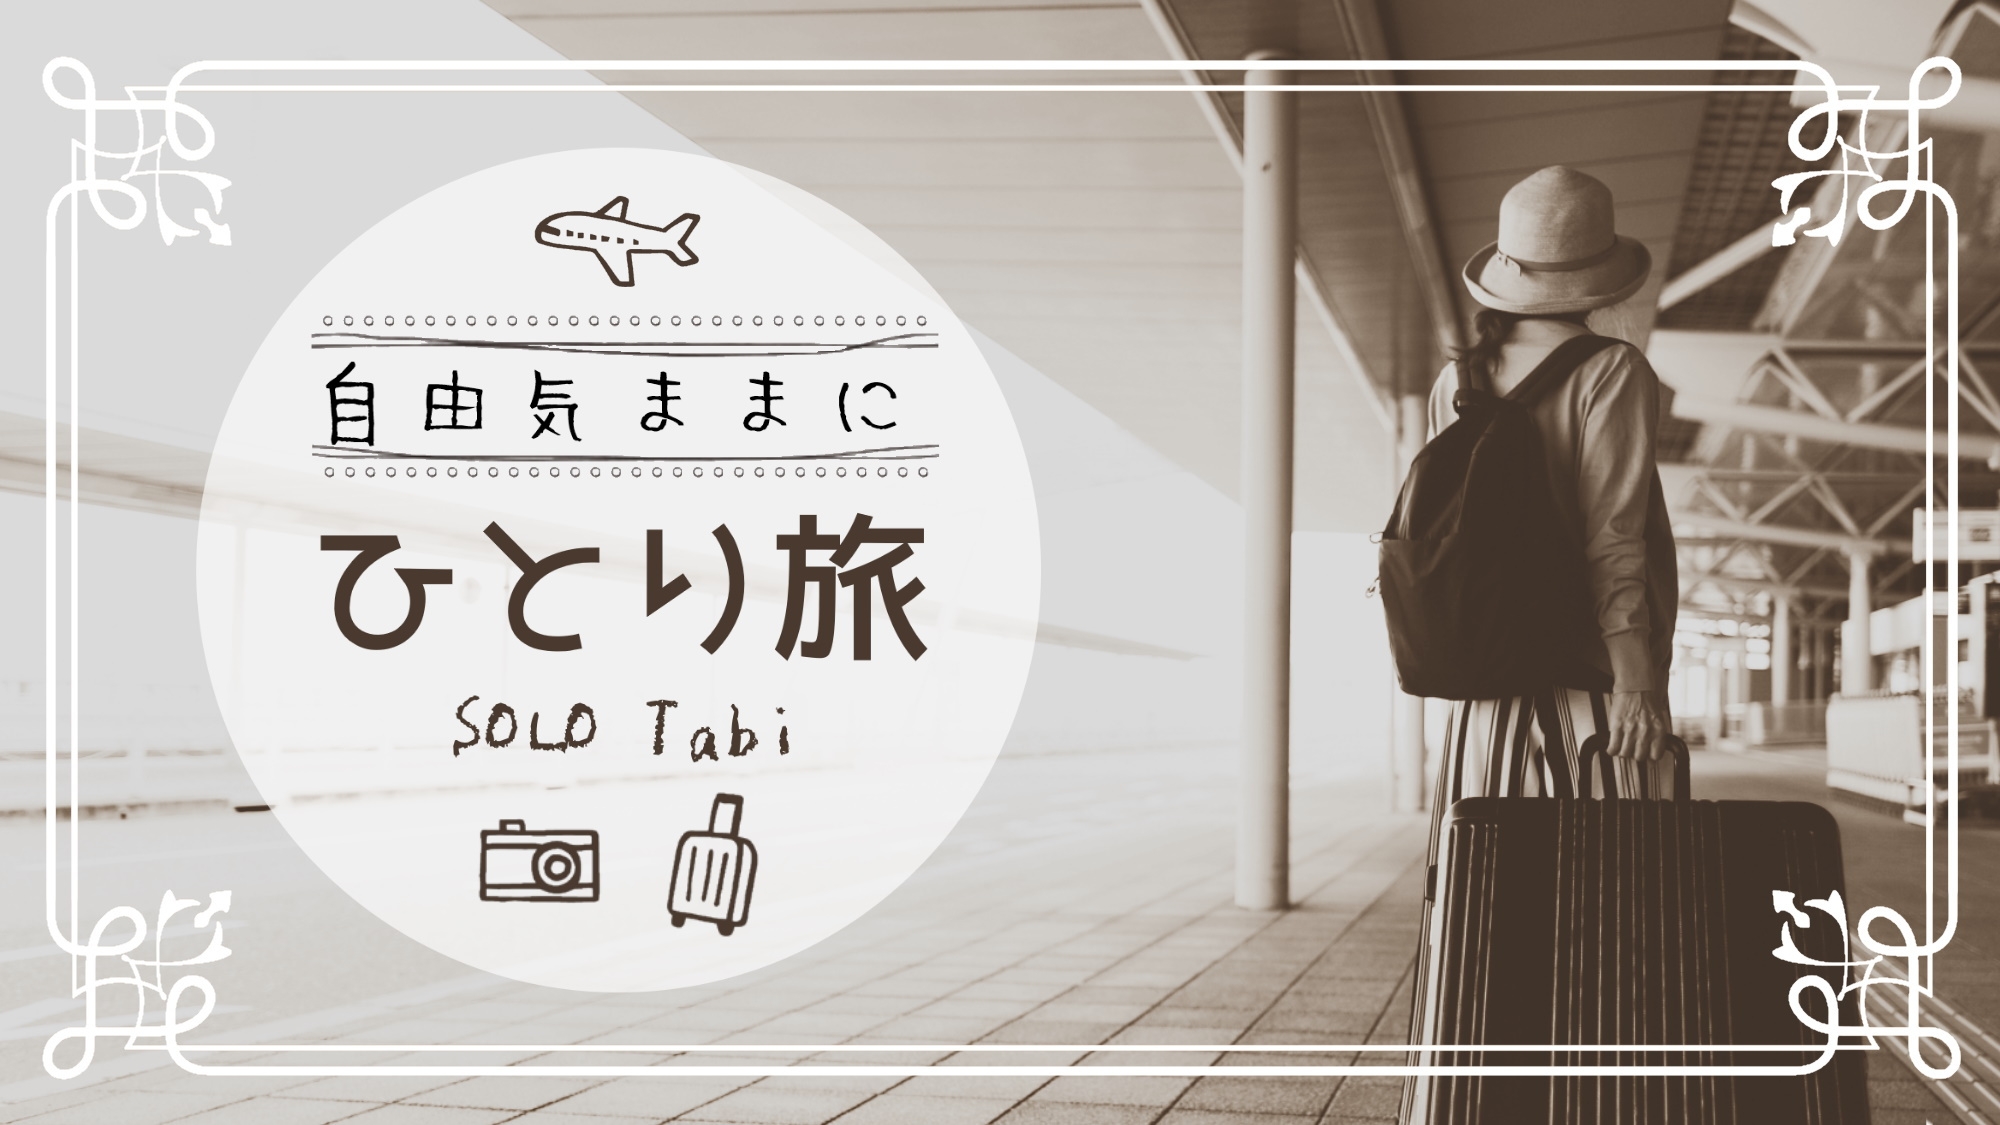 【一人旅】おひとりさま歓迎★湯治や自分へのご褒美旅に山陰鳥取温泉旅！